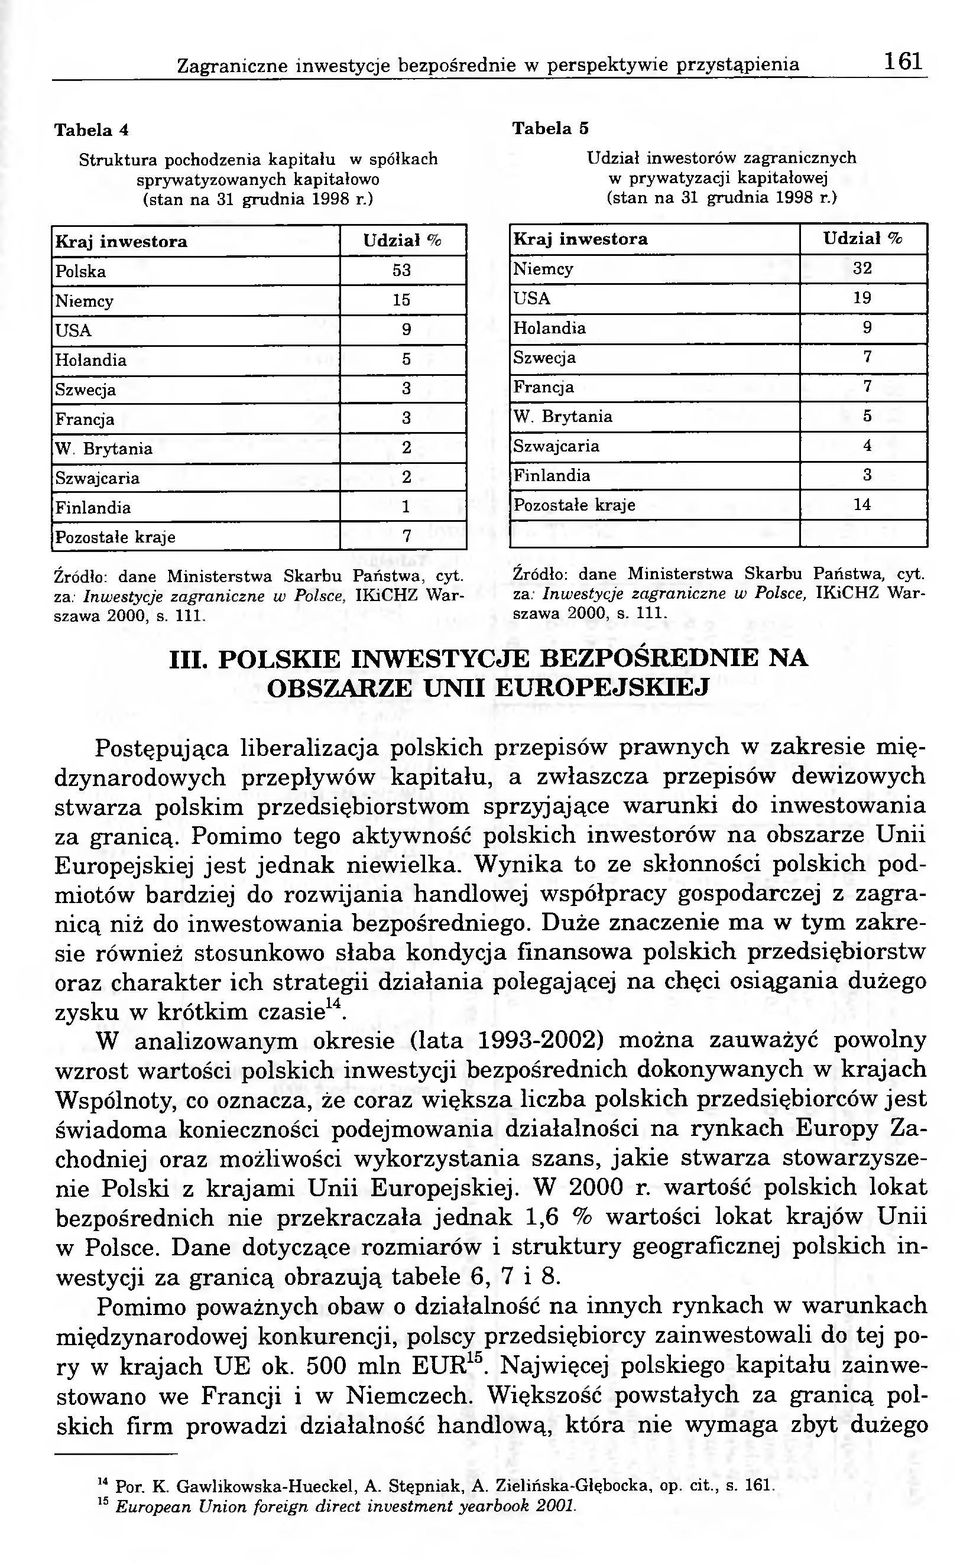 Brytania 2 Szwajcaria 2 Finlandia 1 Pozostałe kraje 7 Tabela 5 Udział inwestorów zagranicznych w prywatyzacji kapitałowej (stan na 31 grudnia 1998 r.